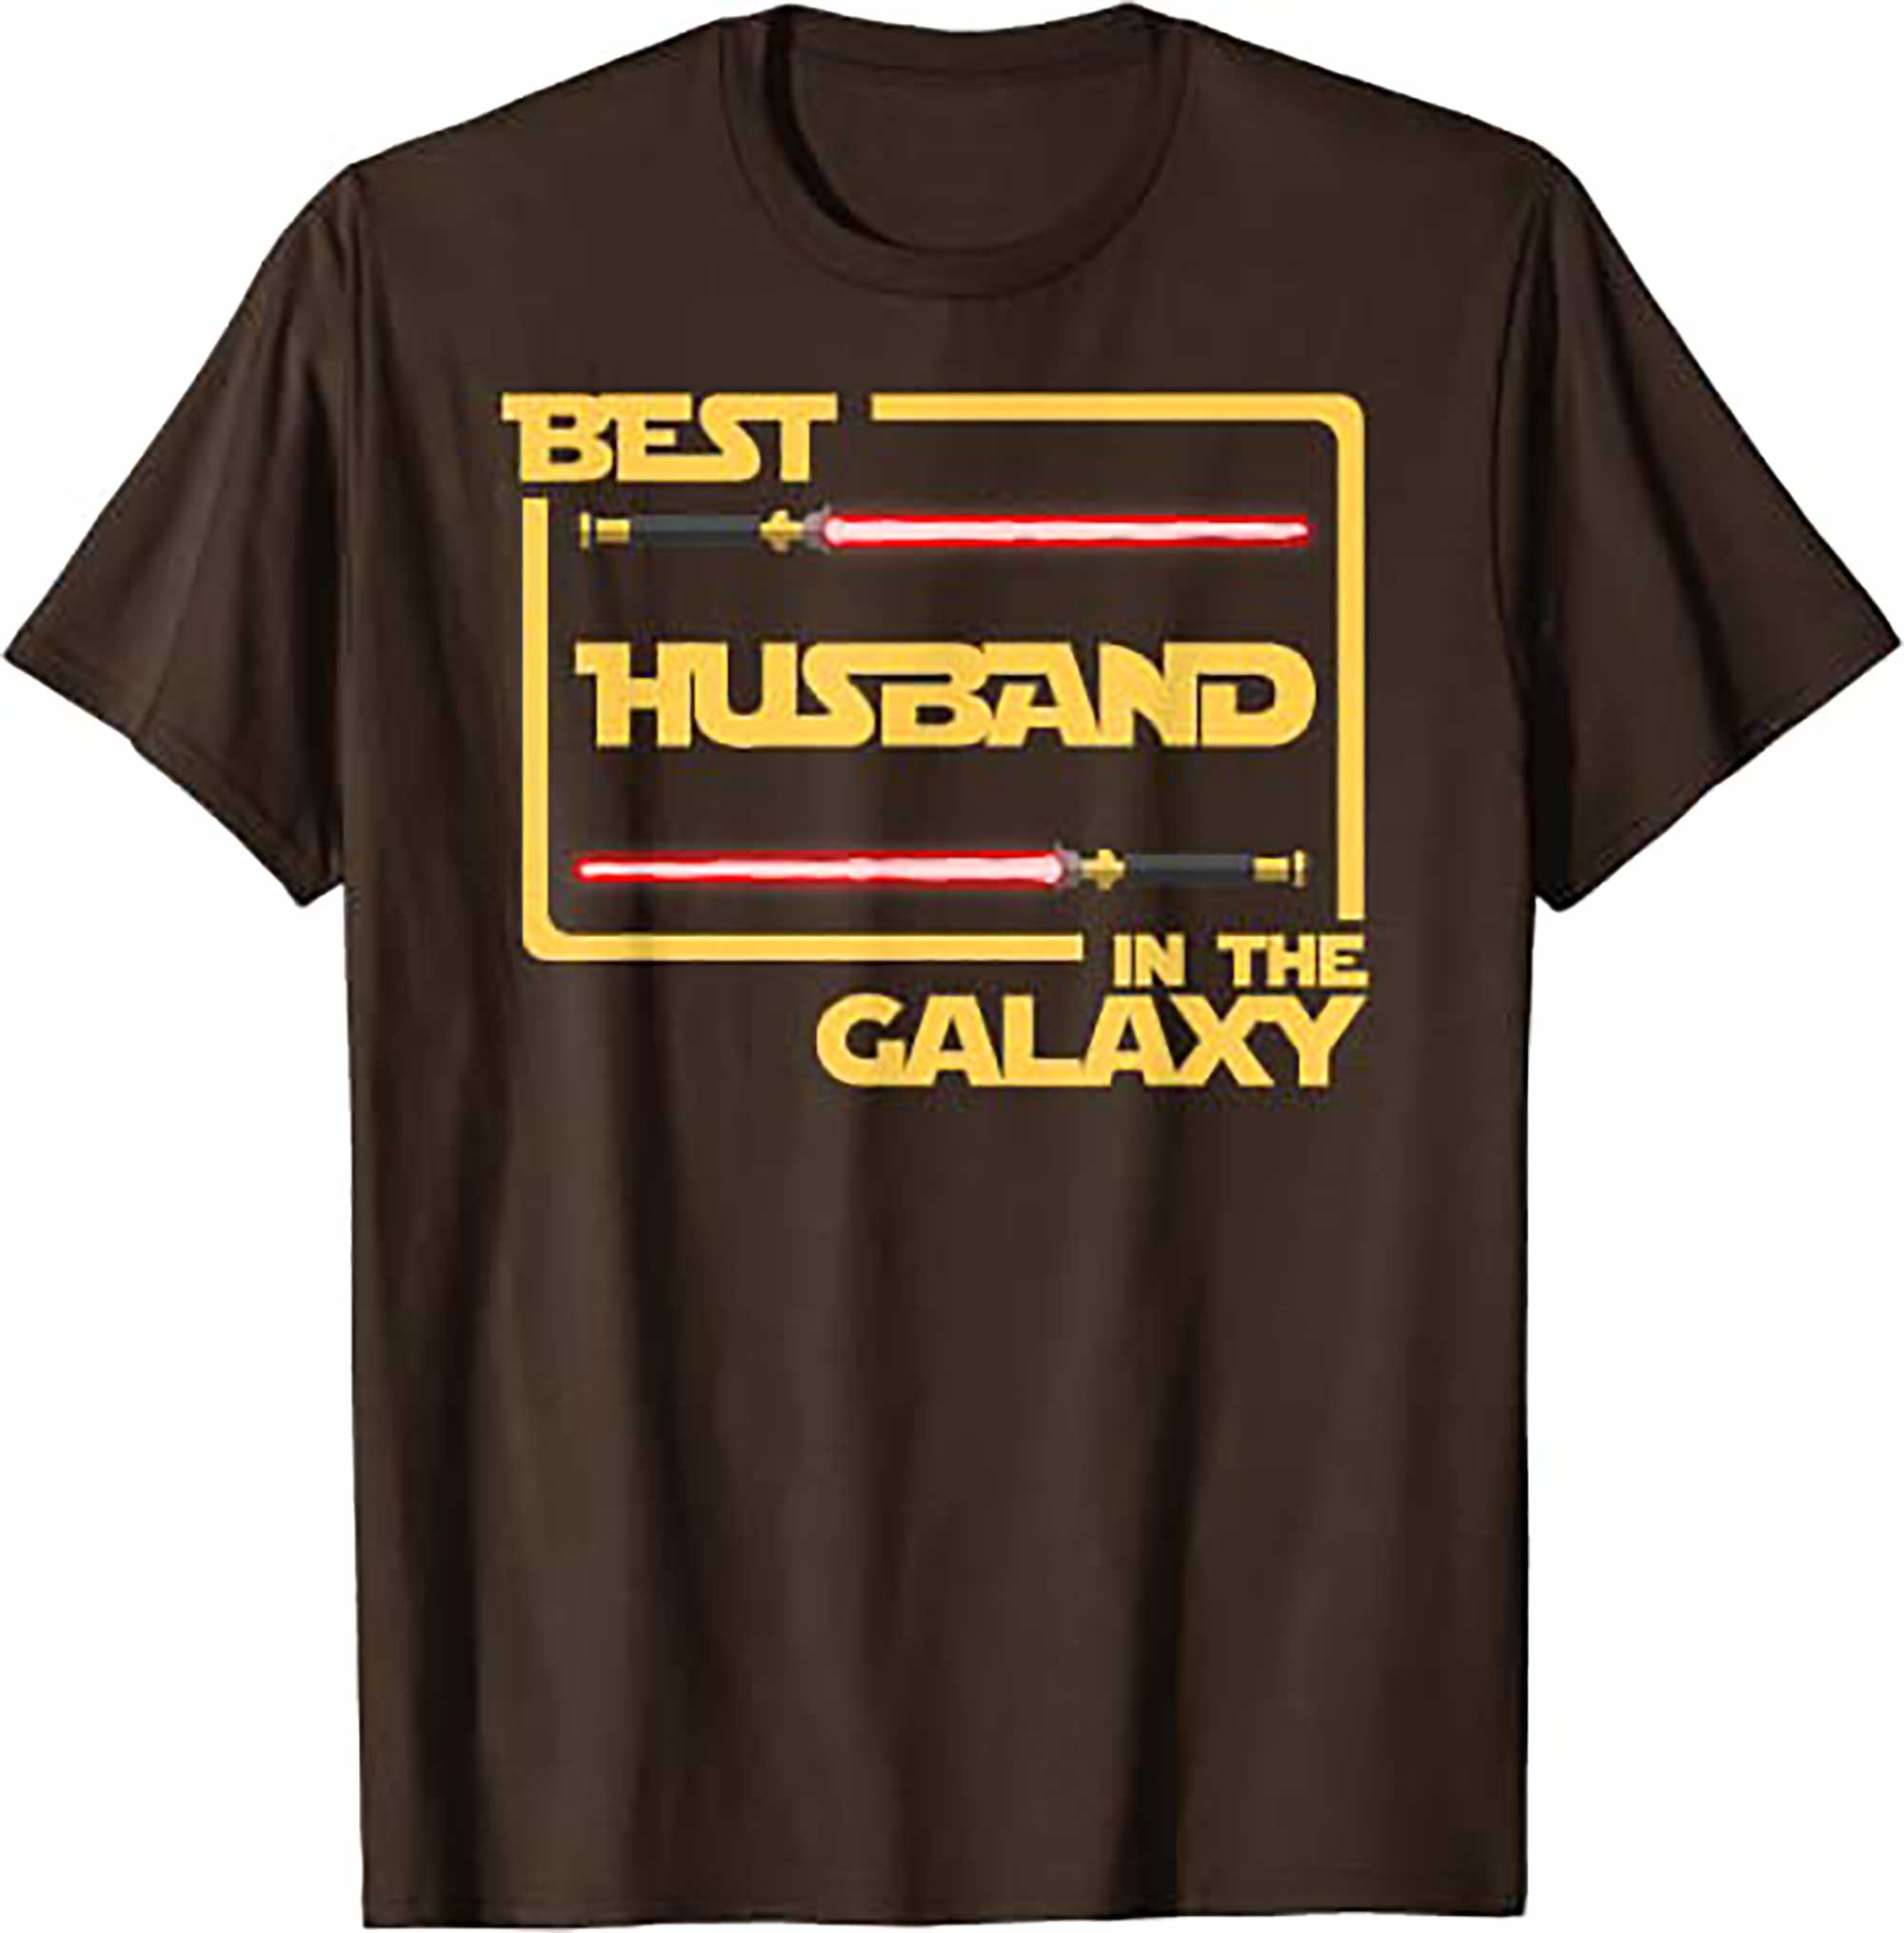 Skitongift Anniversary Gift Best Husband in Galaxy Husband T Shirt